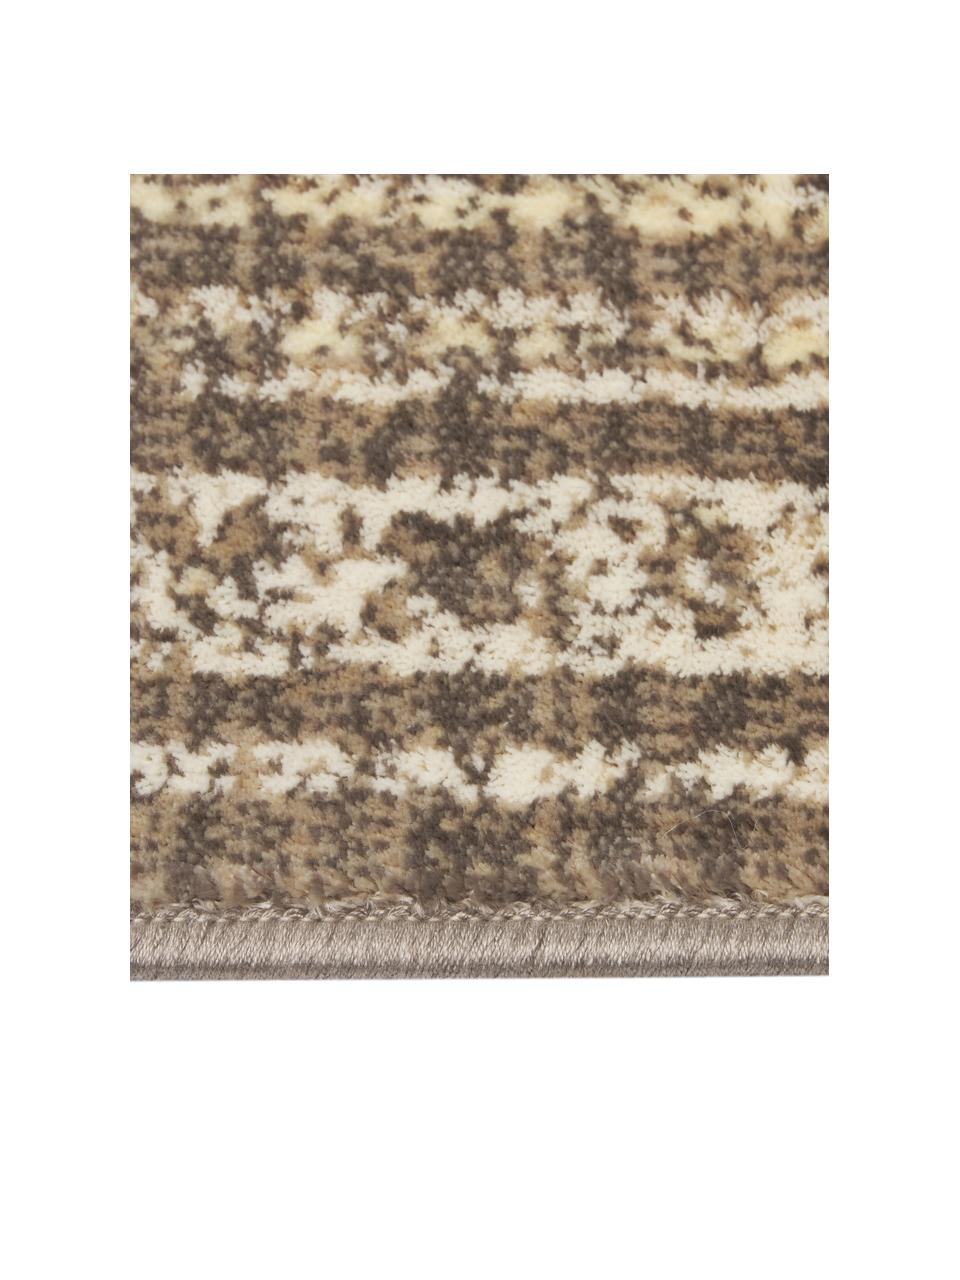 Vintage Teppich Rugged in Beigetönen, 66% Viskose, 25% Baumwolle, 9% Polyester, Beige, Braun, B 170 x L 240 cm (Größe M)